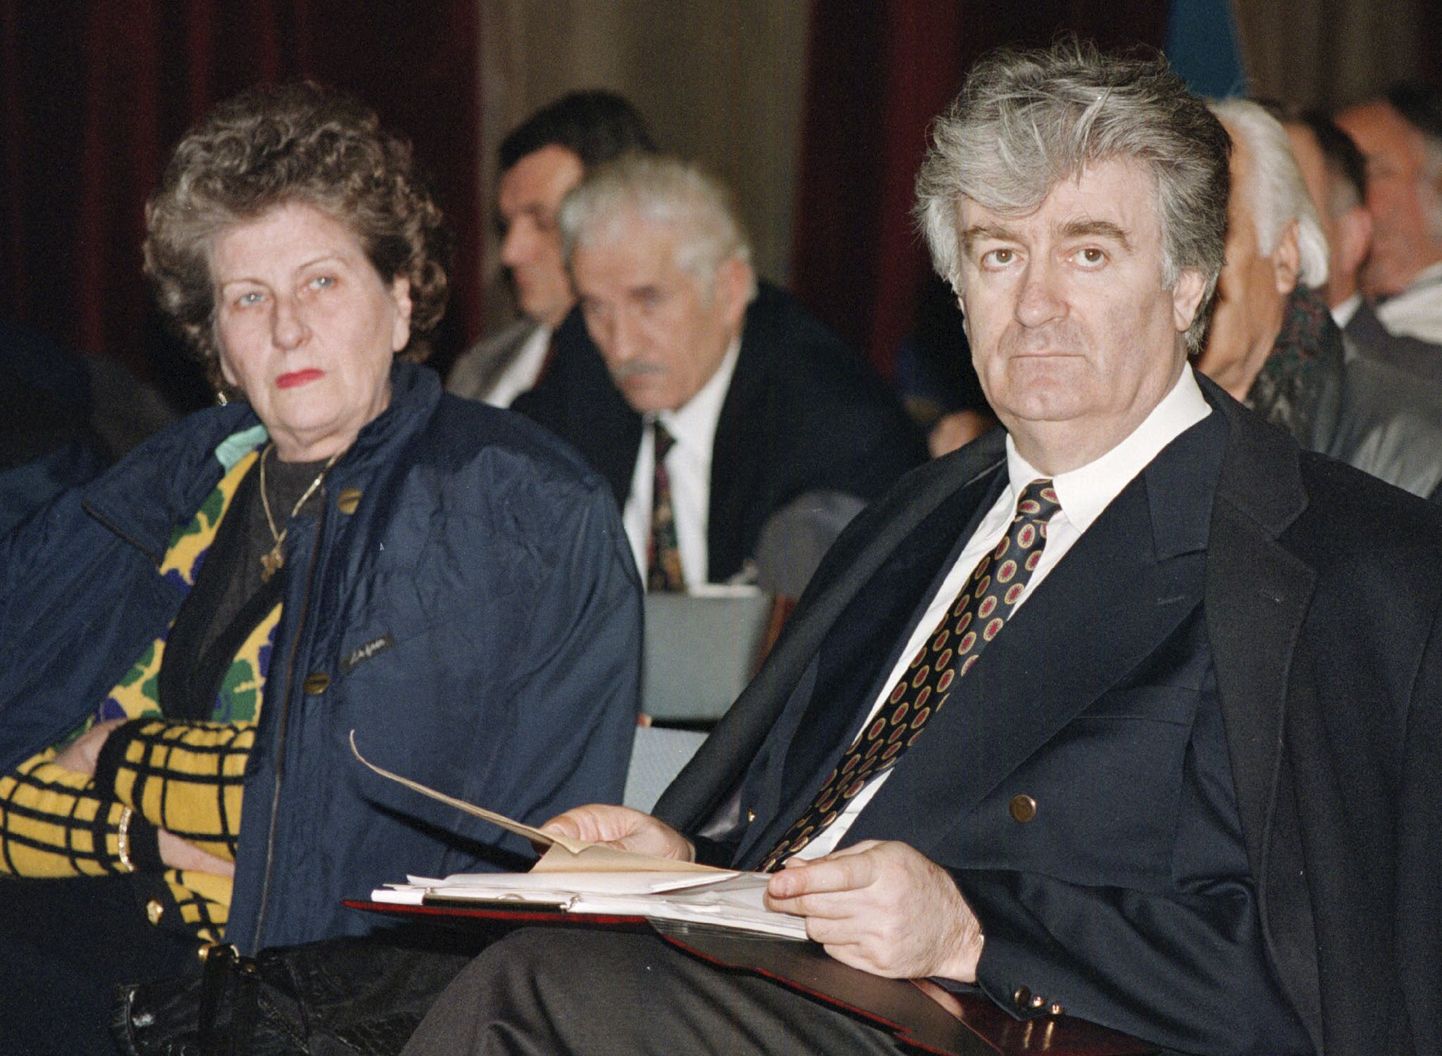 Biljana Plavsic ja praegu kohtu all olev Radovan Karadžic aastal 1995.